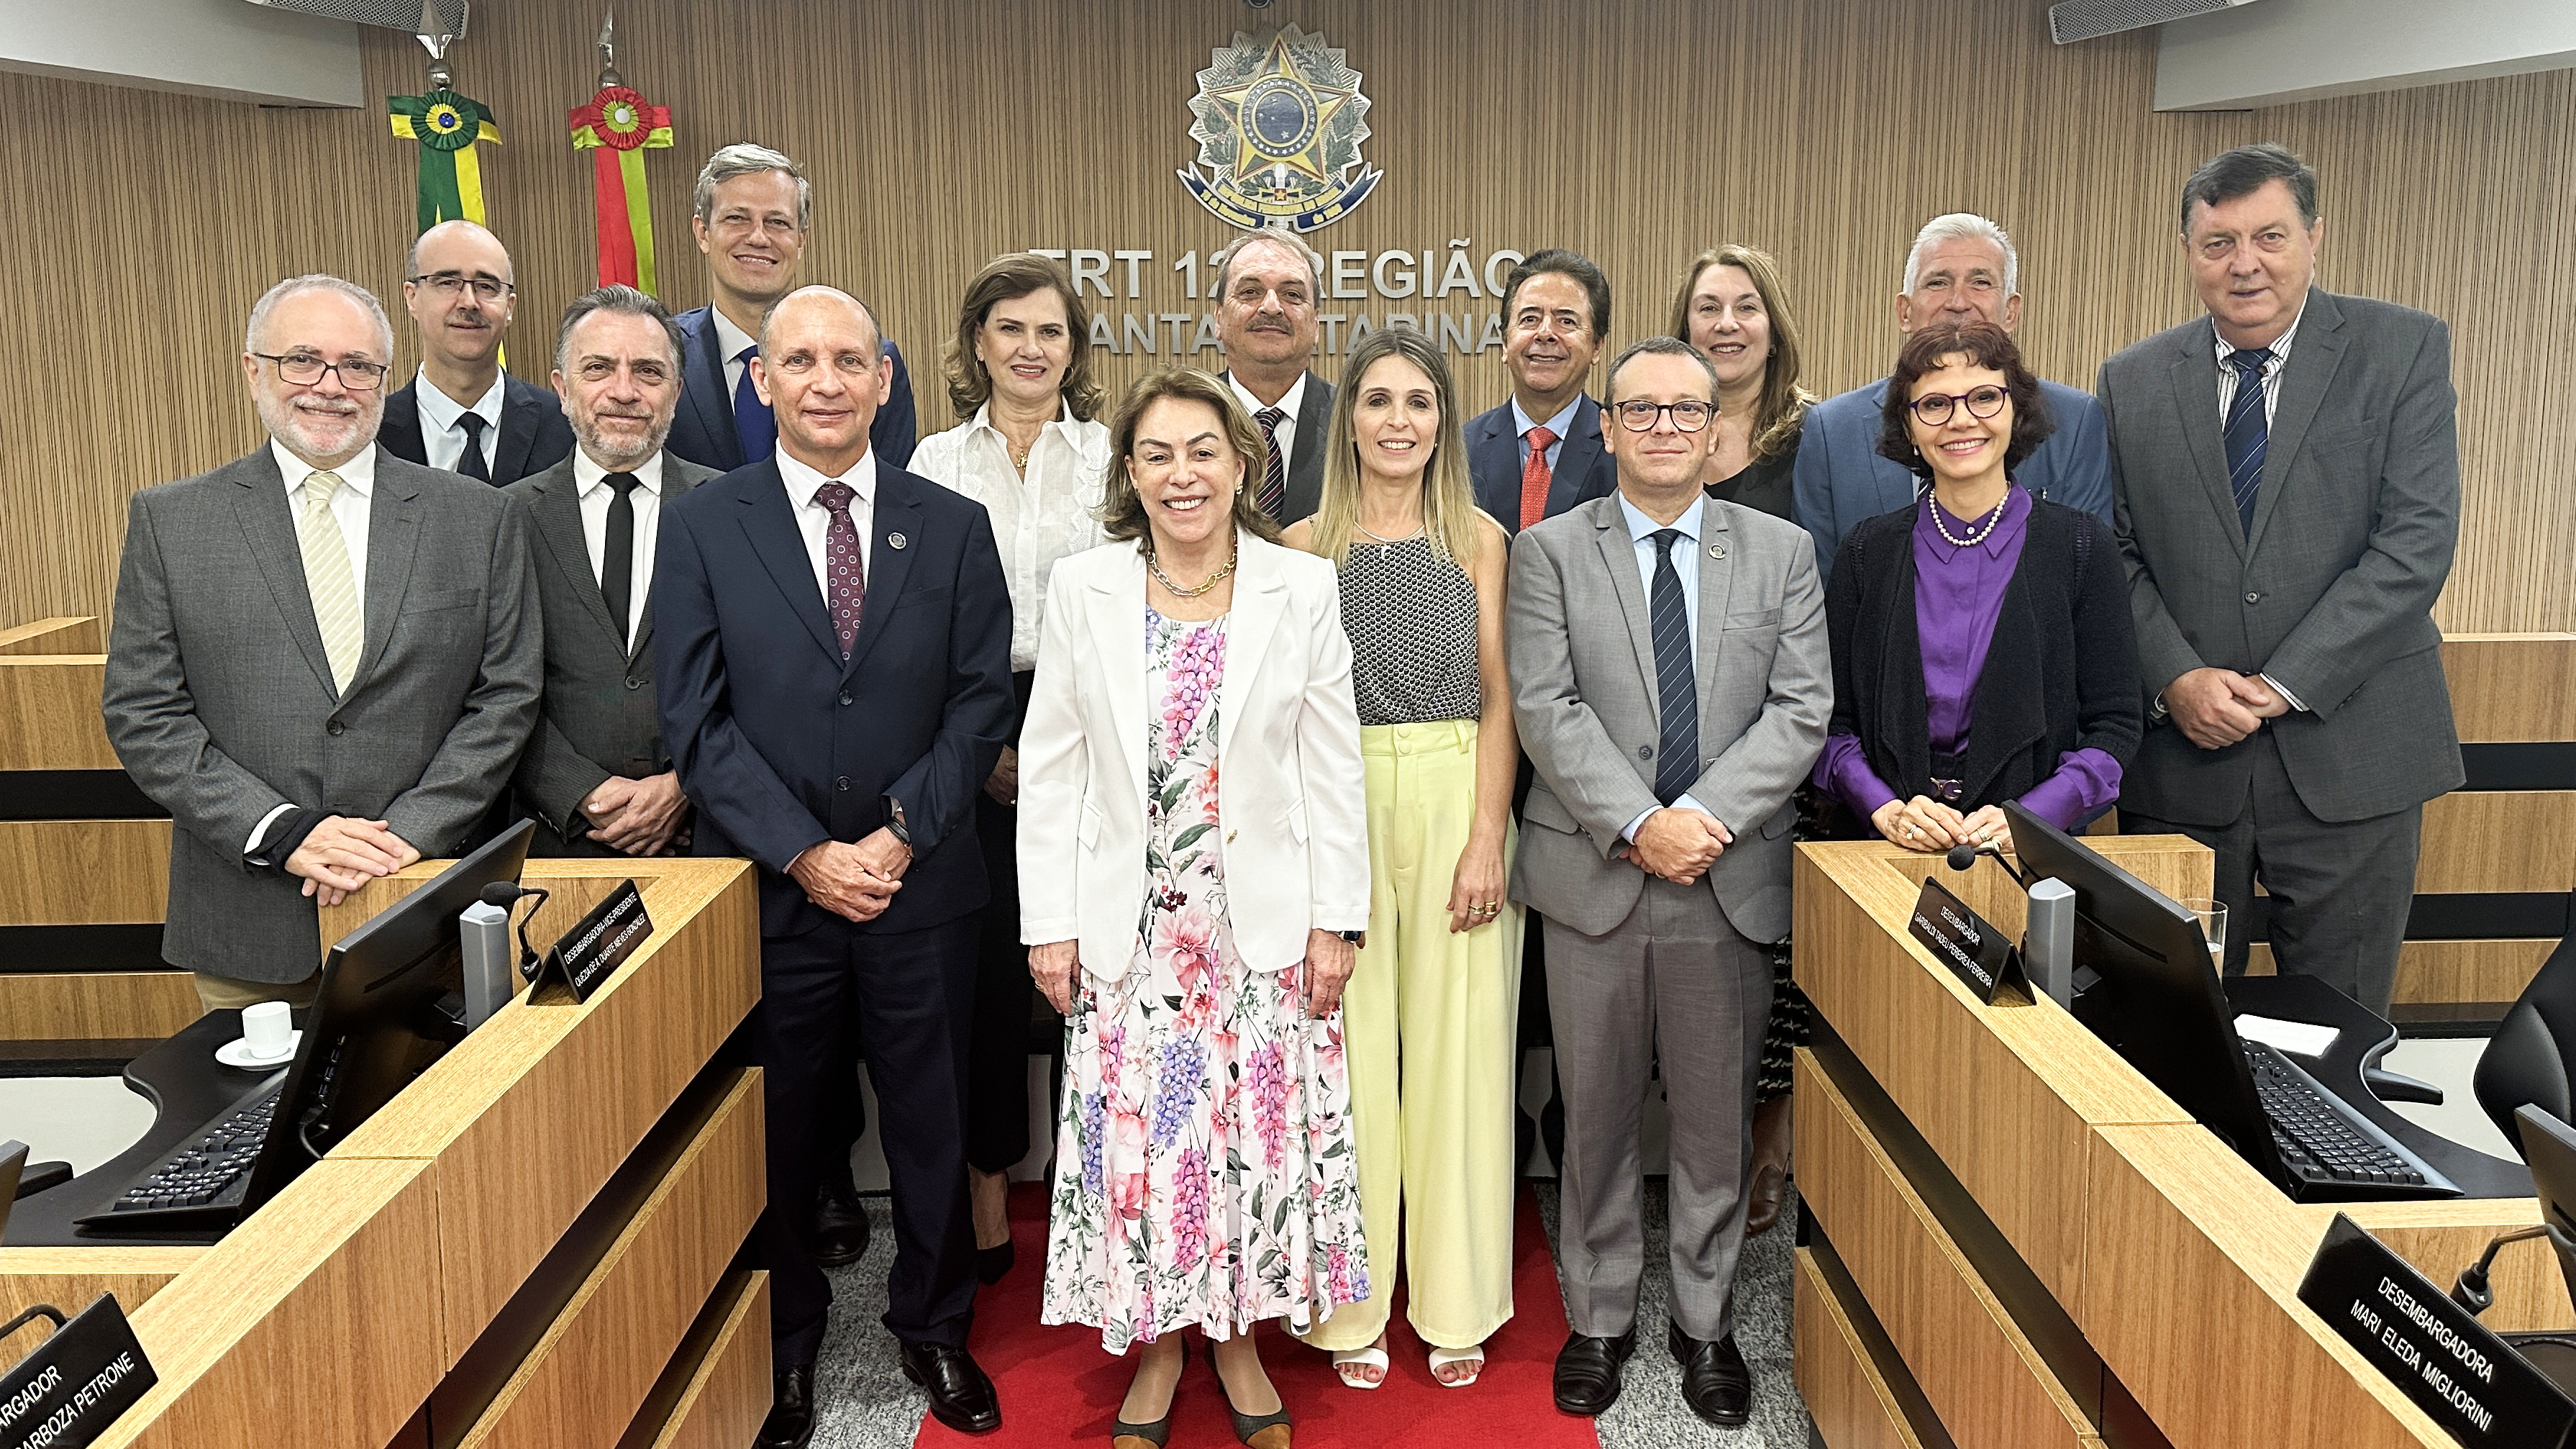 Fotografia traz a ministra Dora Maria da Costa ao centro, com outros quatorze desembargadores do TRT-SC, sendo quatro mulheres e dez homens